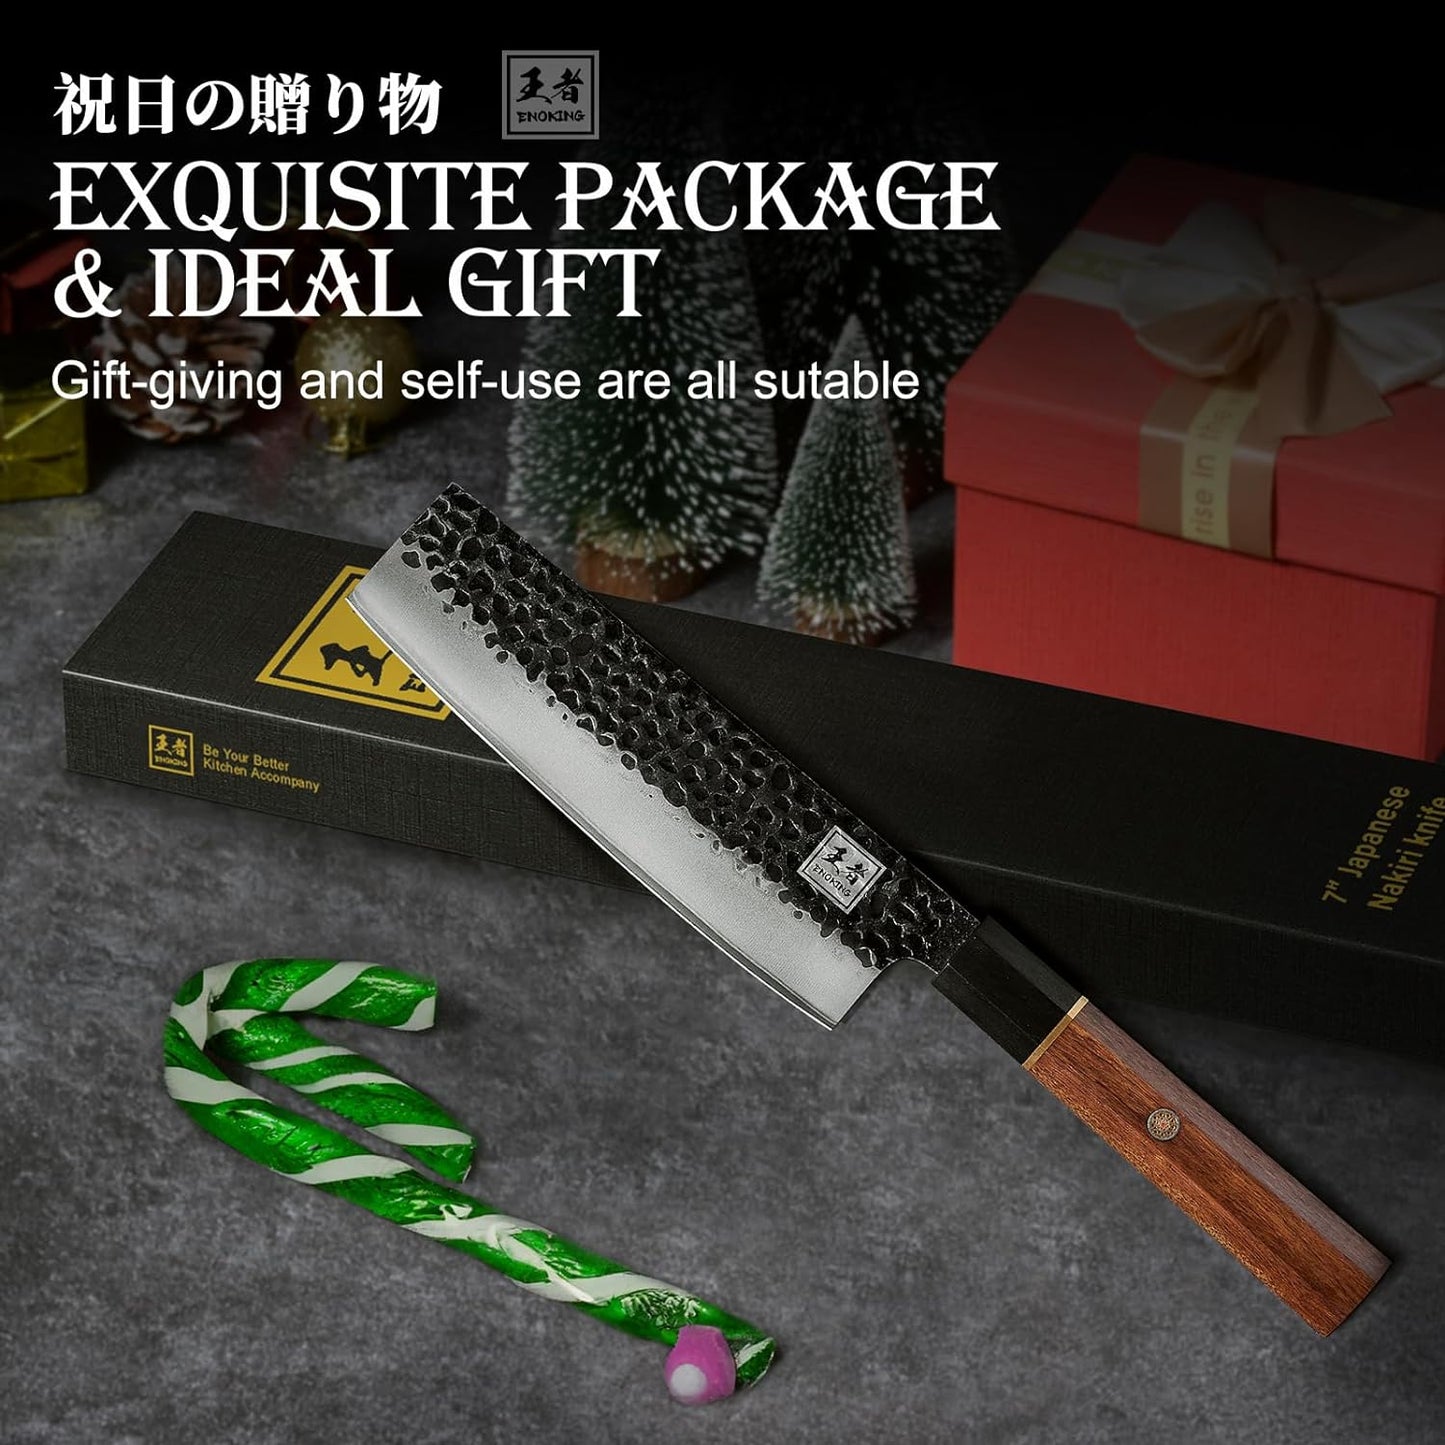 KD Japanese Nakiri Chef Knife 7" 5 Layers Kitchen Knife with Gift Box